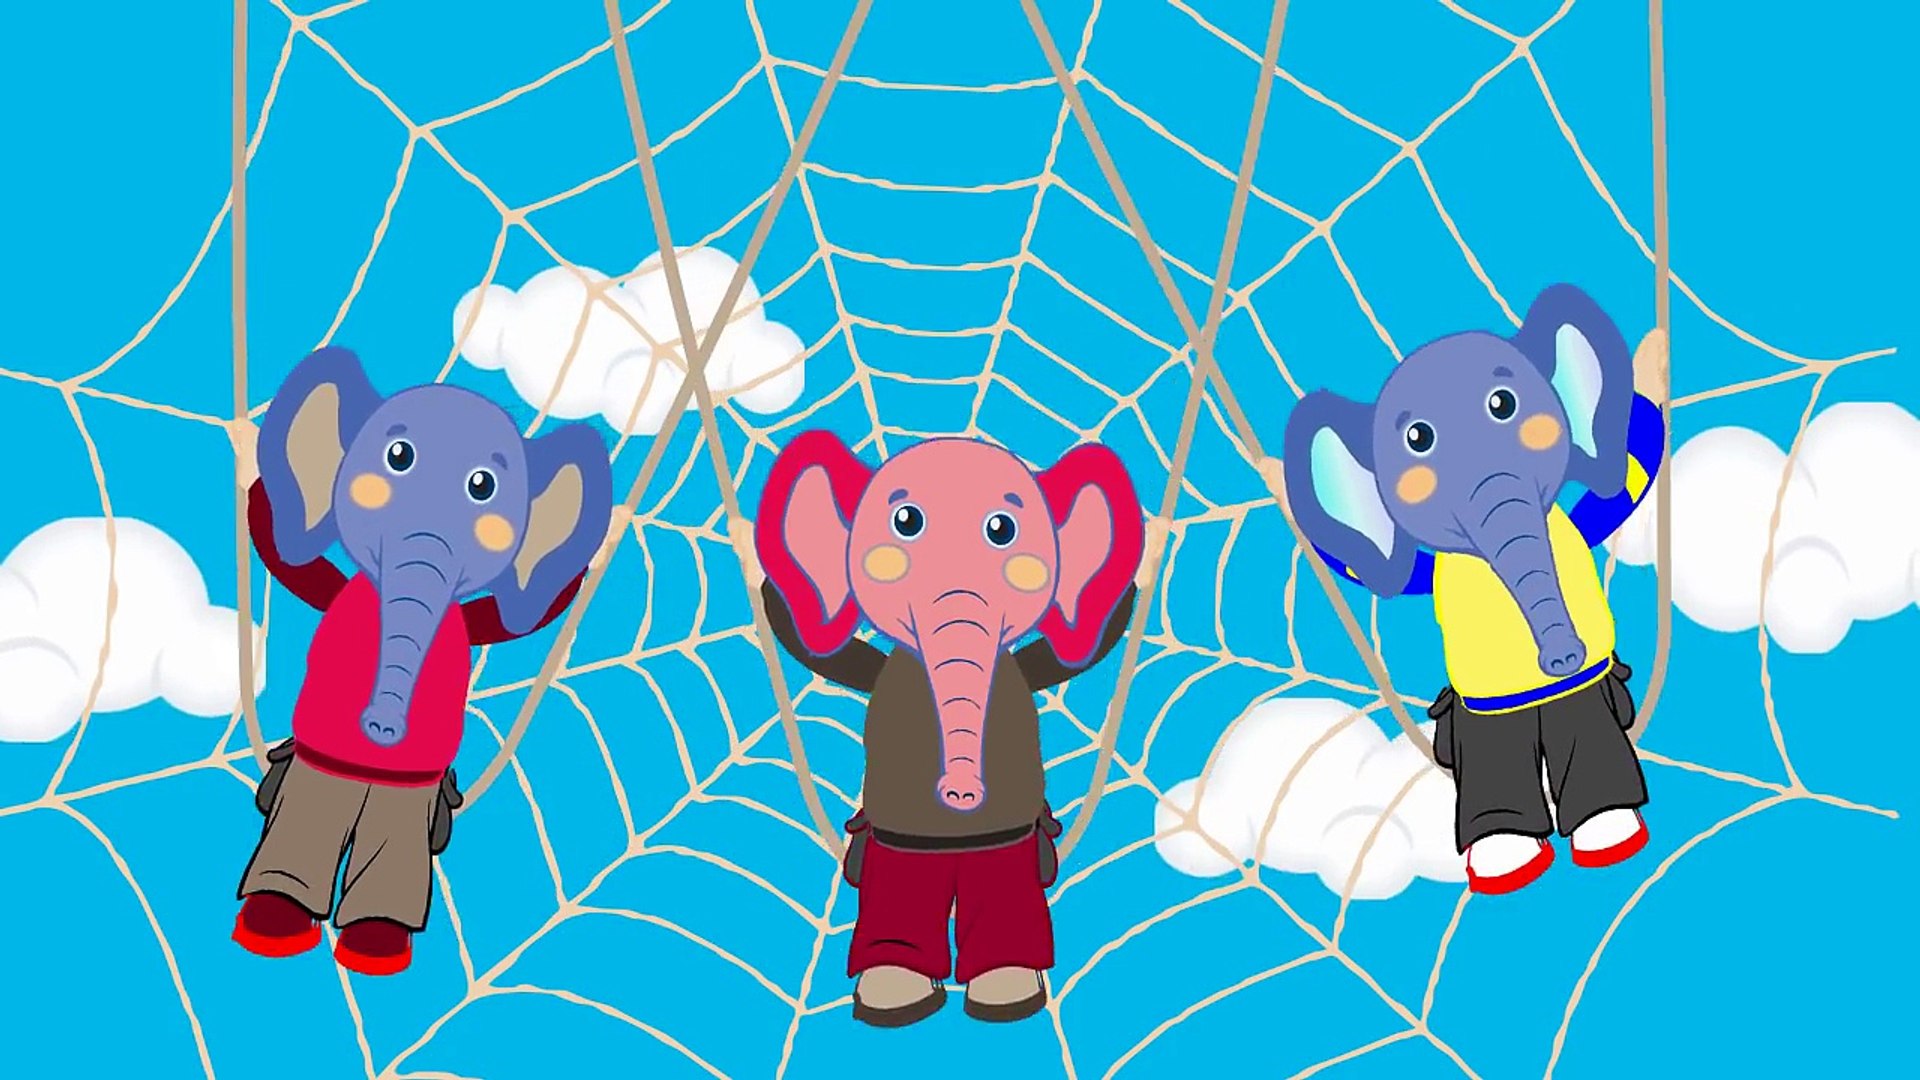 Un elefante se balanceaba sobre la tela de una araña'-fmBfwaQYwt4 - video  Dailymotion